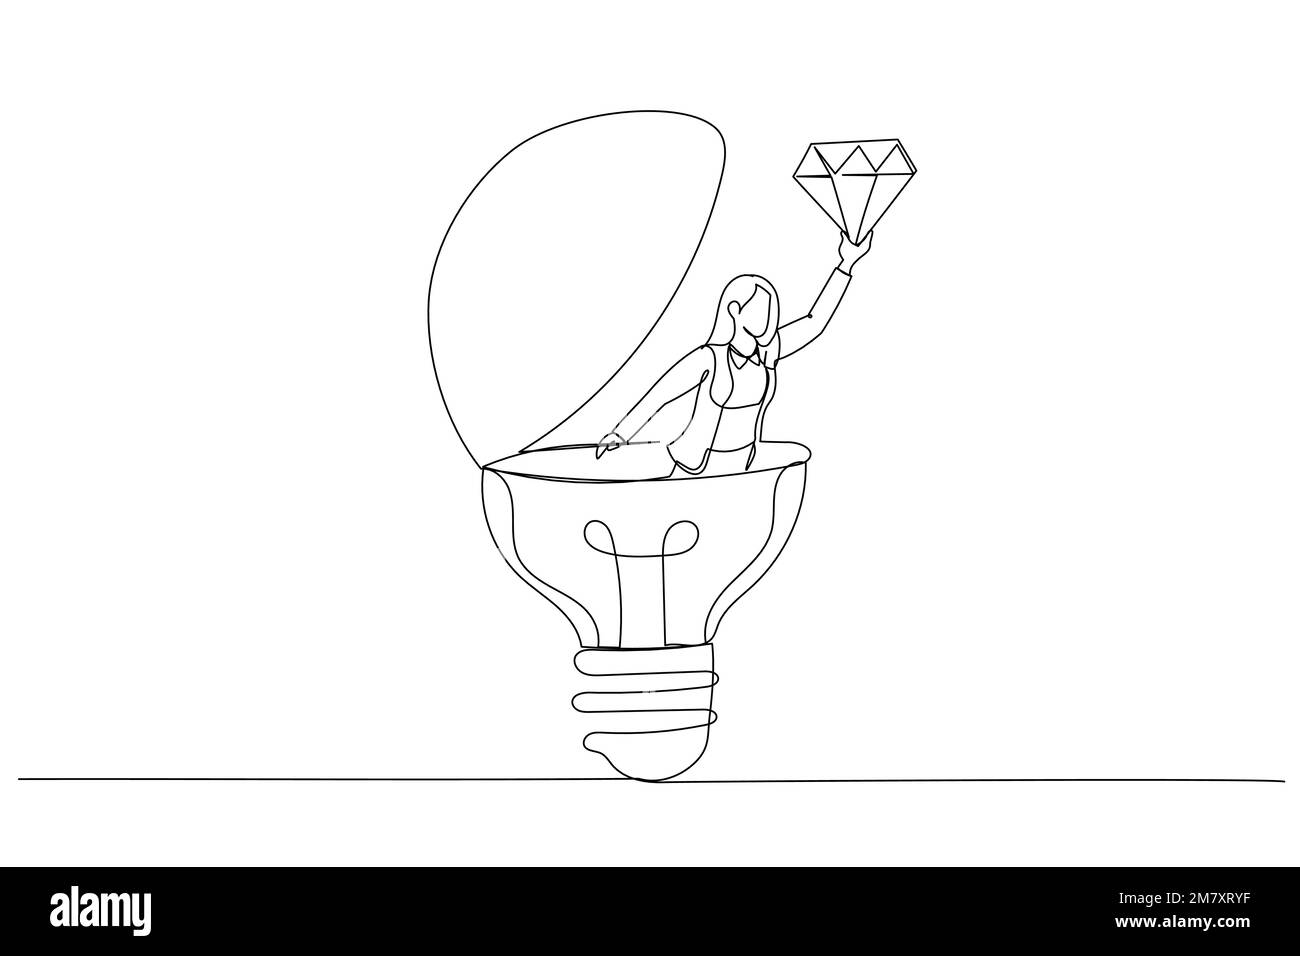 Cartone animato di businesswoman scoprire diamante prezioso inestimabile da brillante idea lampadina. Valore aziendale. Stile artistico a linea continua Illustrazione Vettoriale